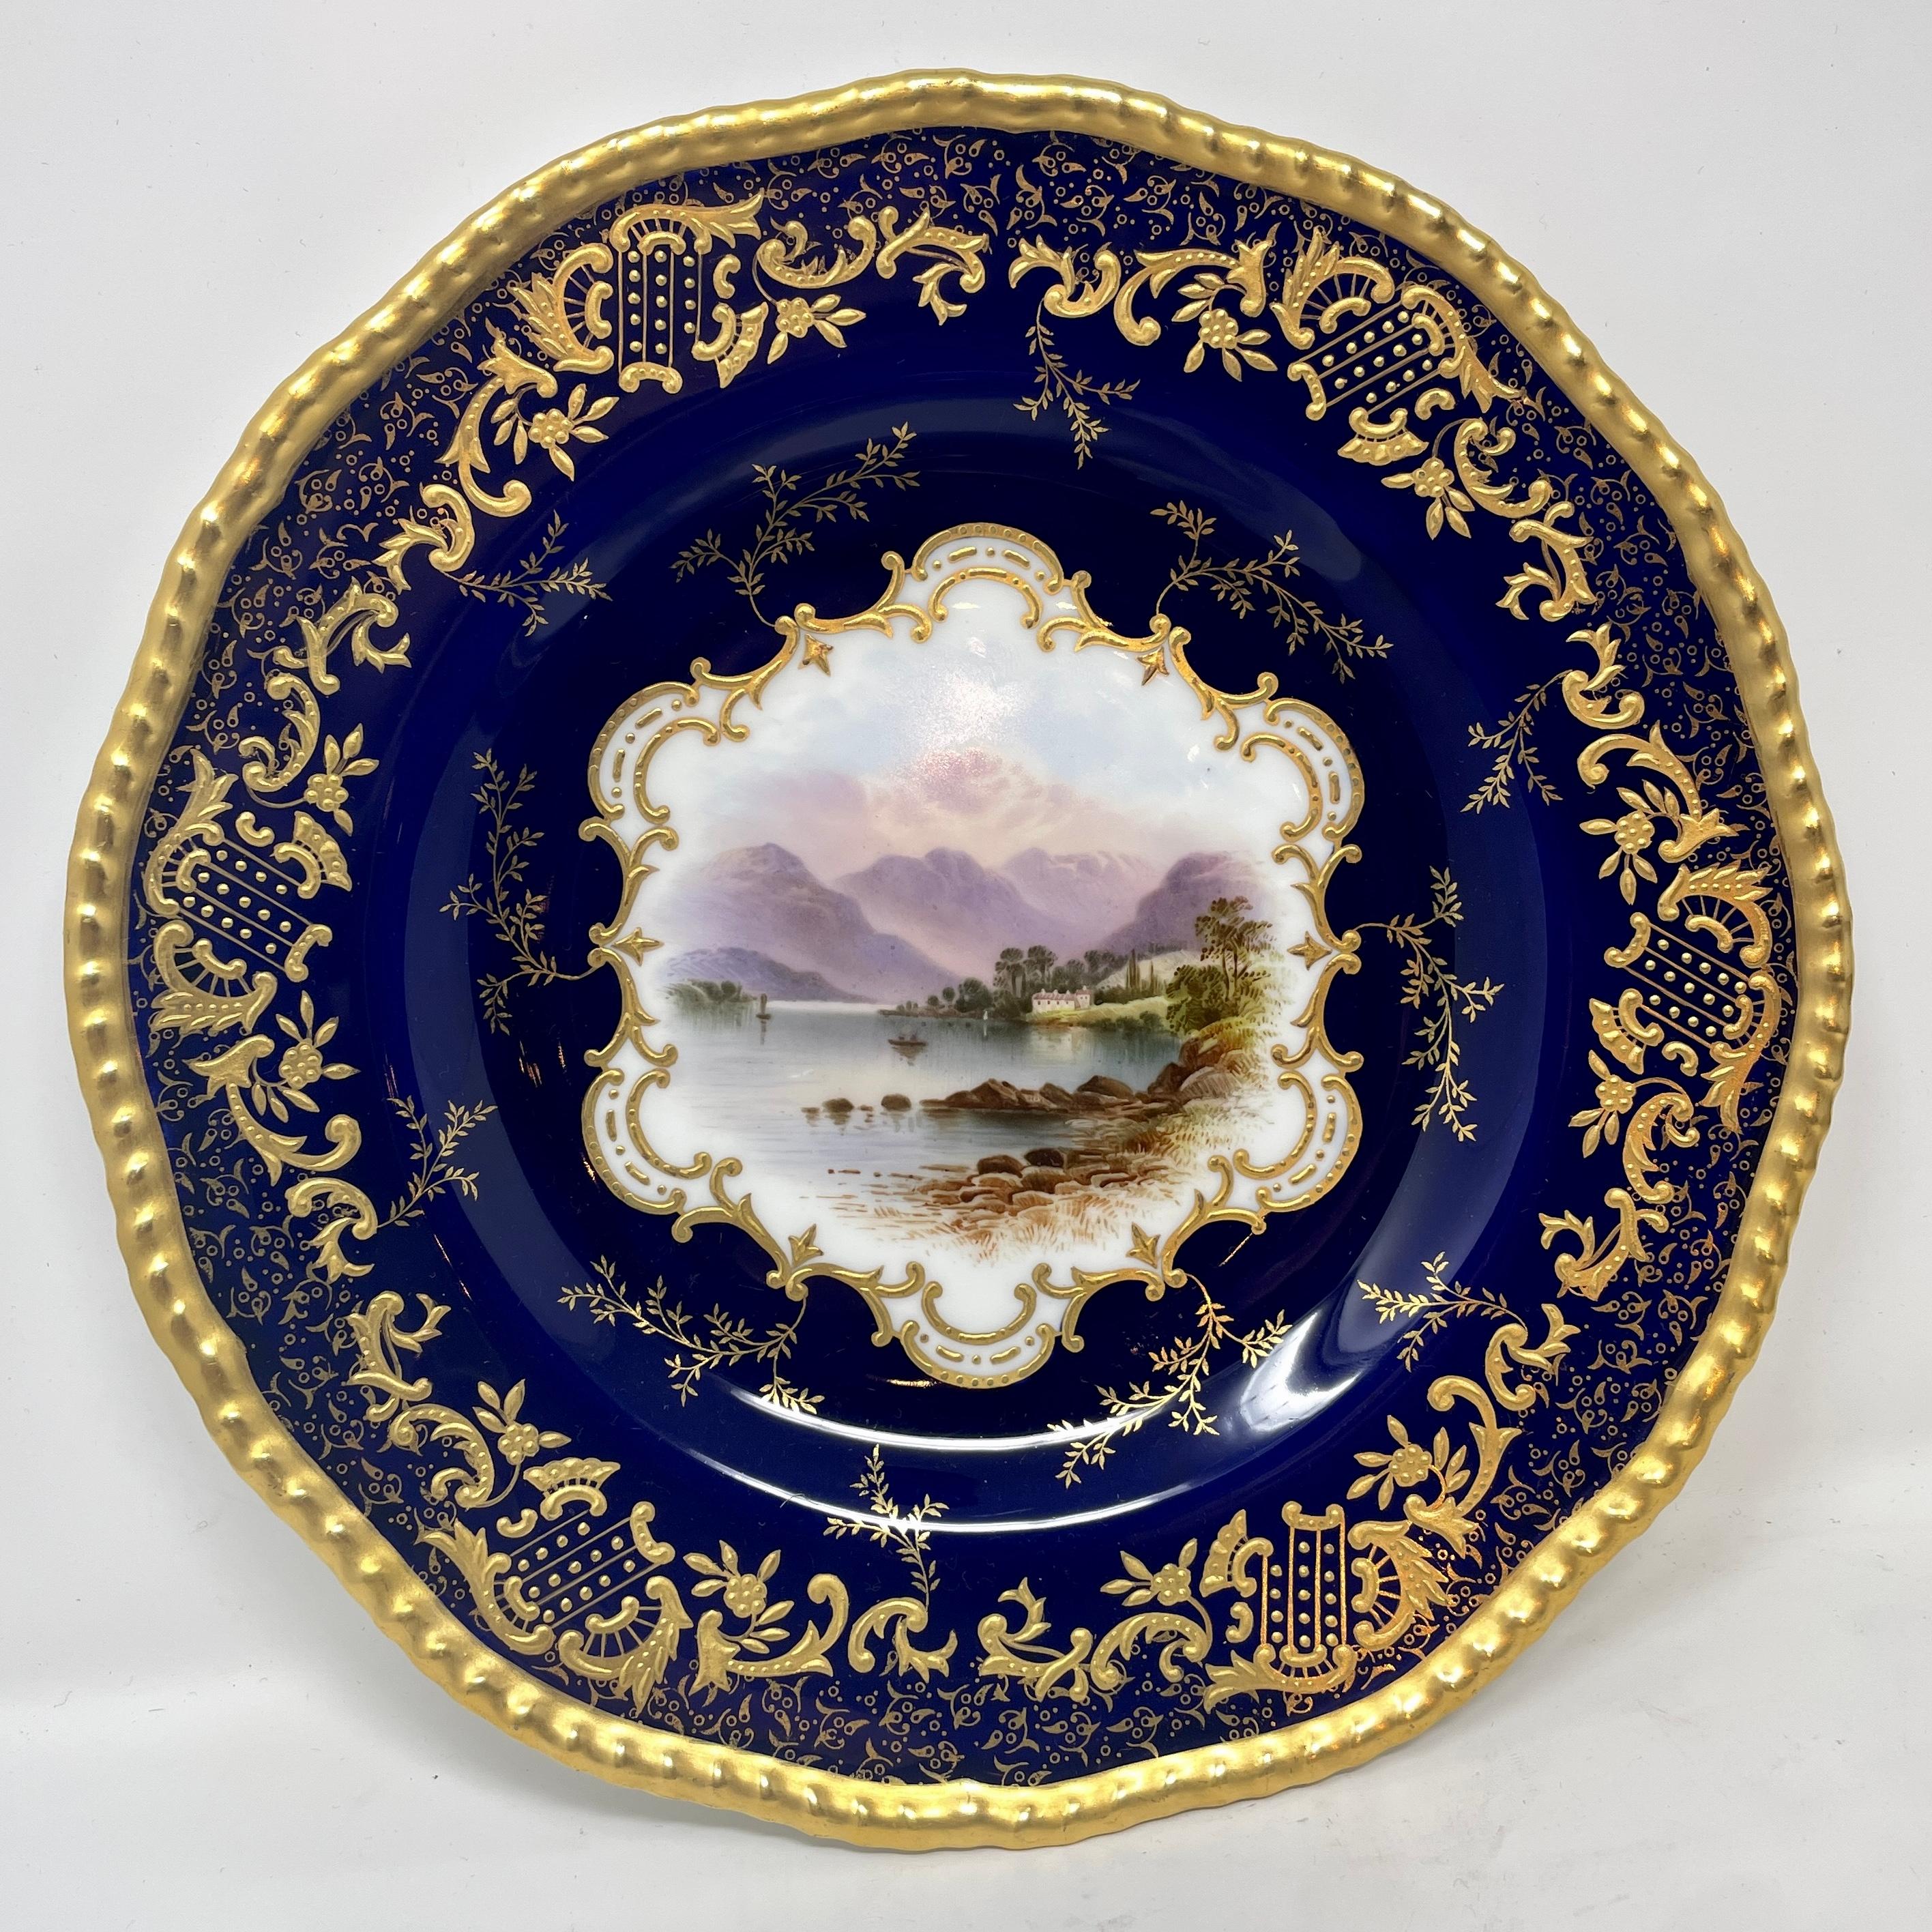 Ensemble de 10 assiettes anglaises anciennes en porcelaine Coalport bleu cobalt et or, vers 1900. Chaque assiette présente un design central unique. 